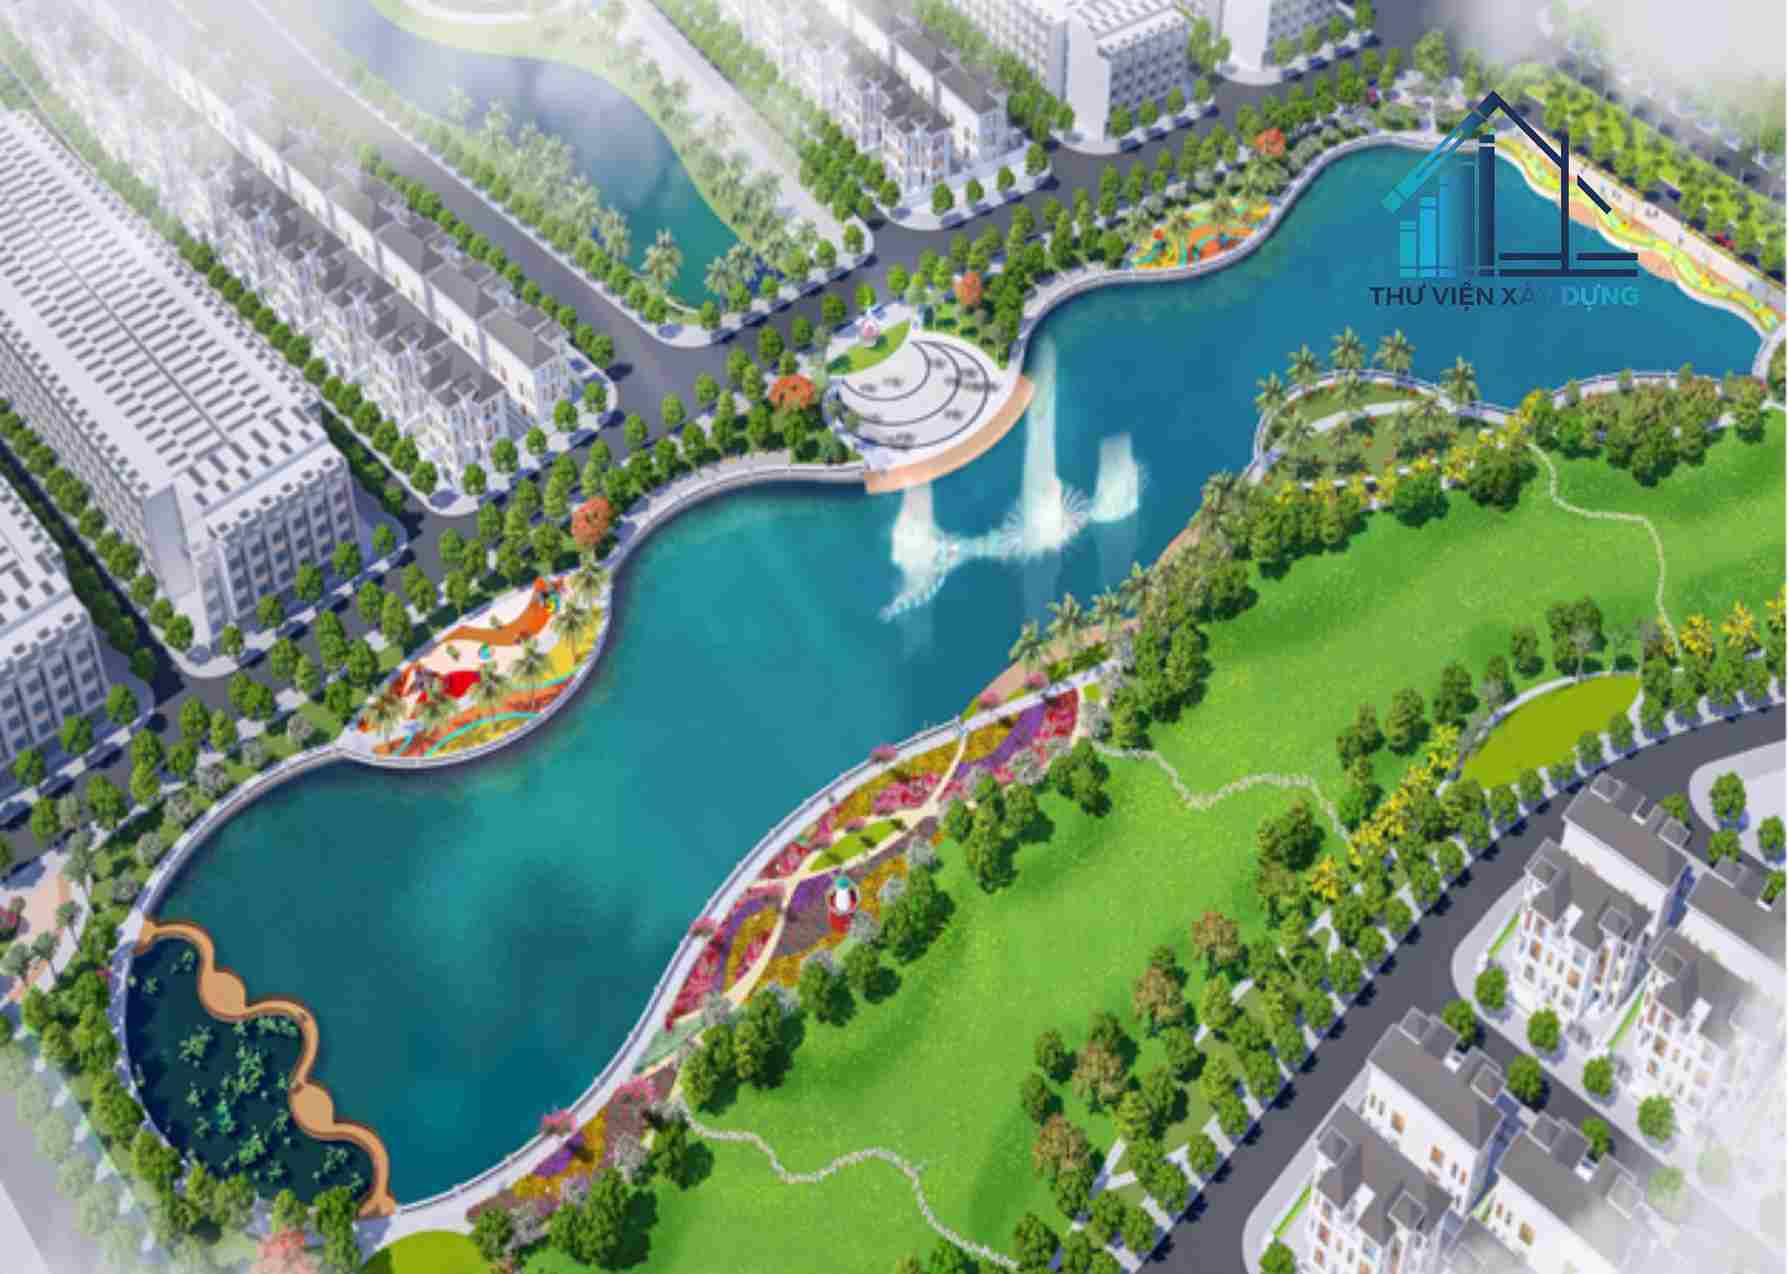 Hình ảnh minh họa quy hoạch phân khu khu đô thị Bắc Cầu Hàn